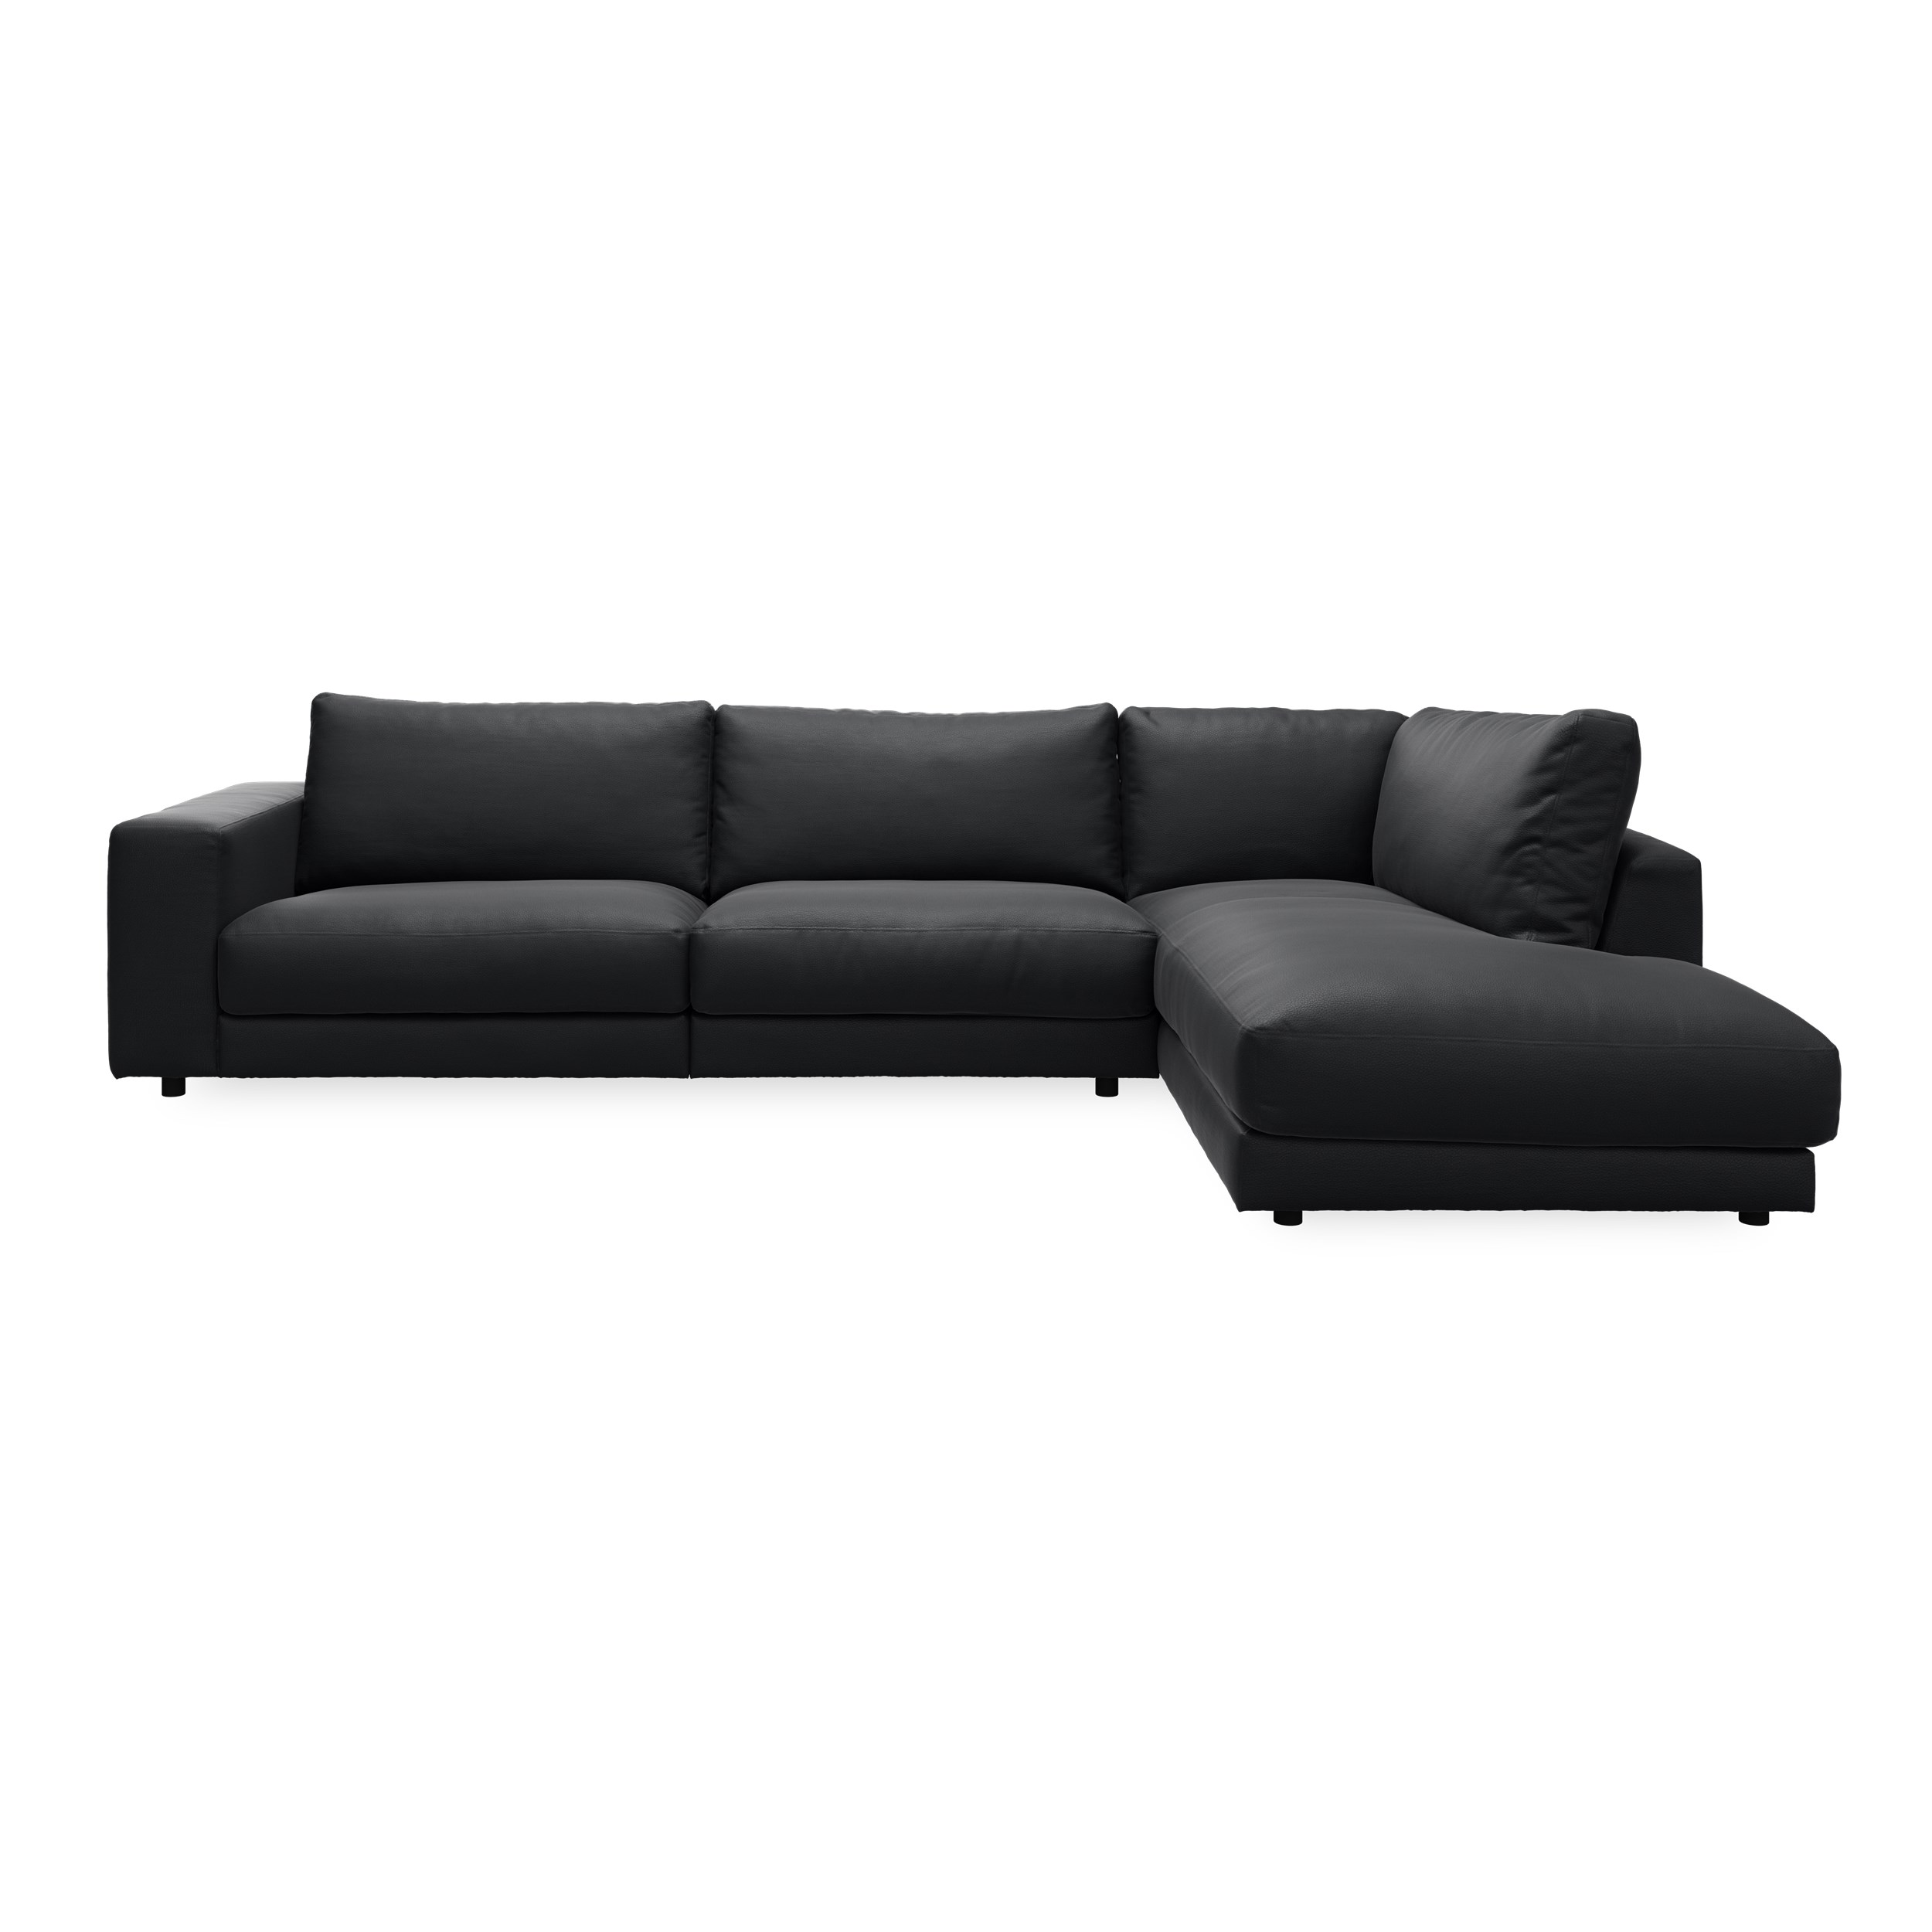 Bennent Sofa med pufafslutning - Life-Line Black læder, ben i sort plast og S:PURskum på sinusfjedre m.fiber/silikone mix R:Dun/skum mix